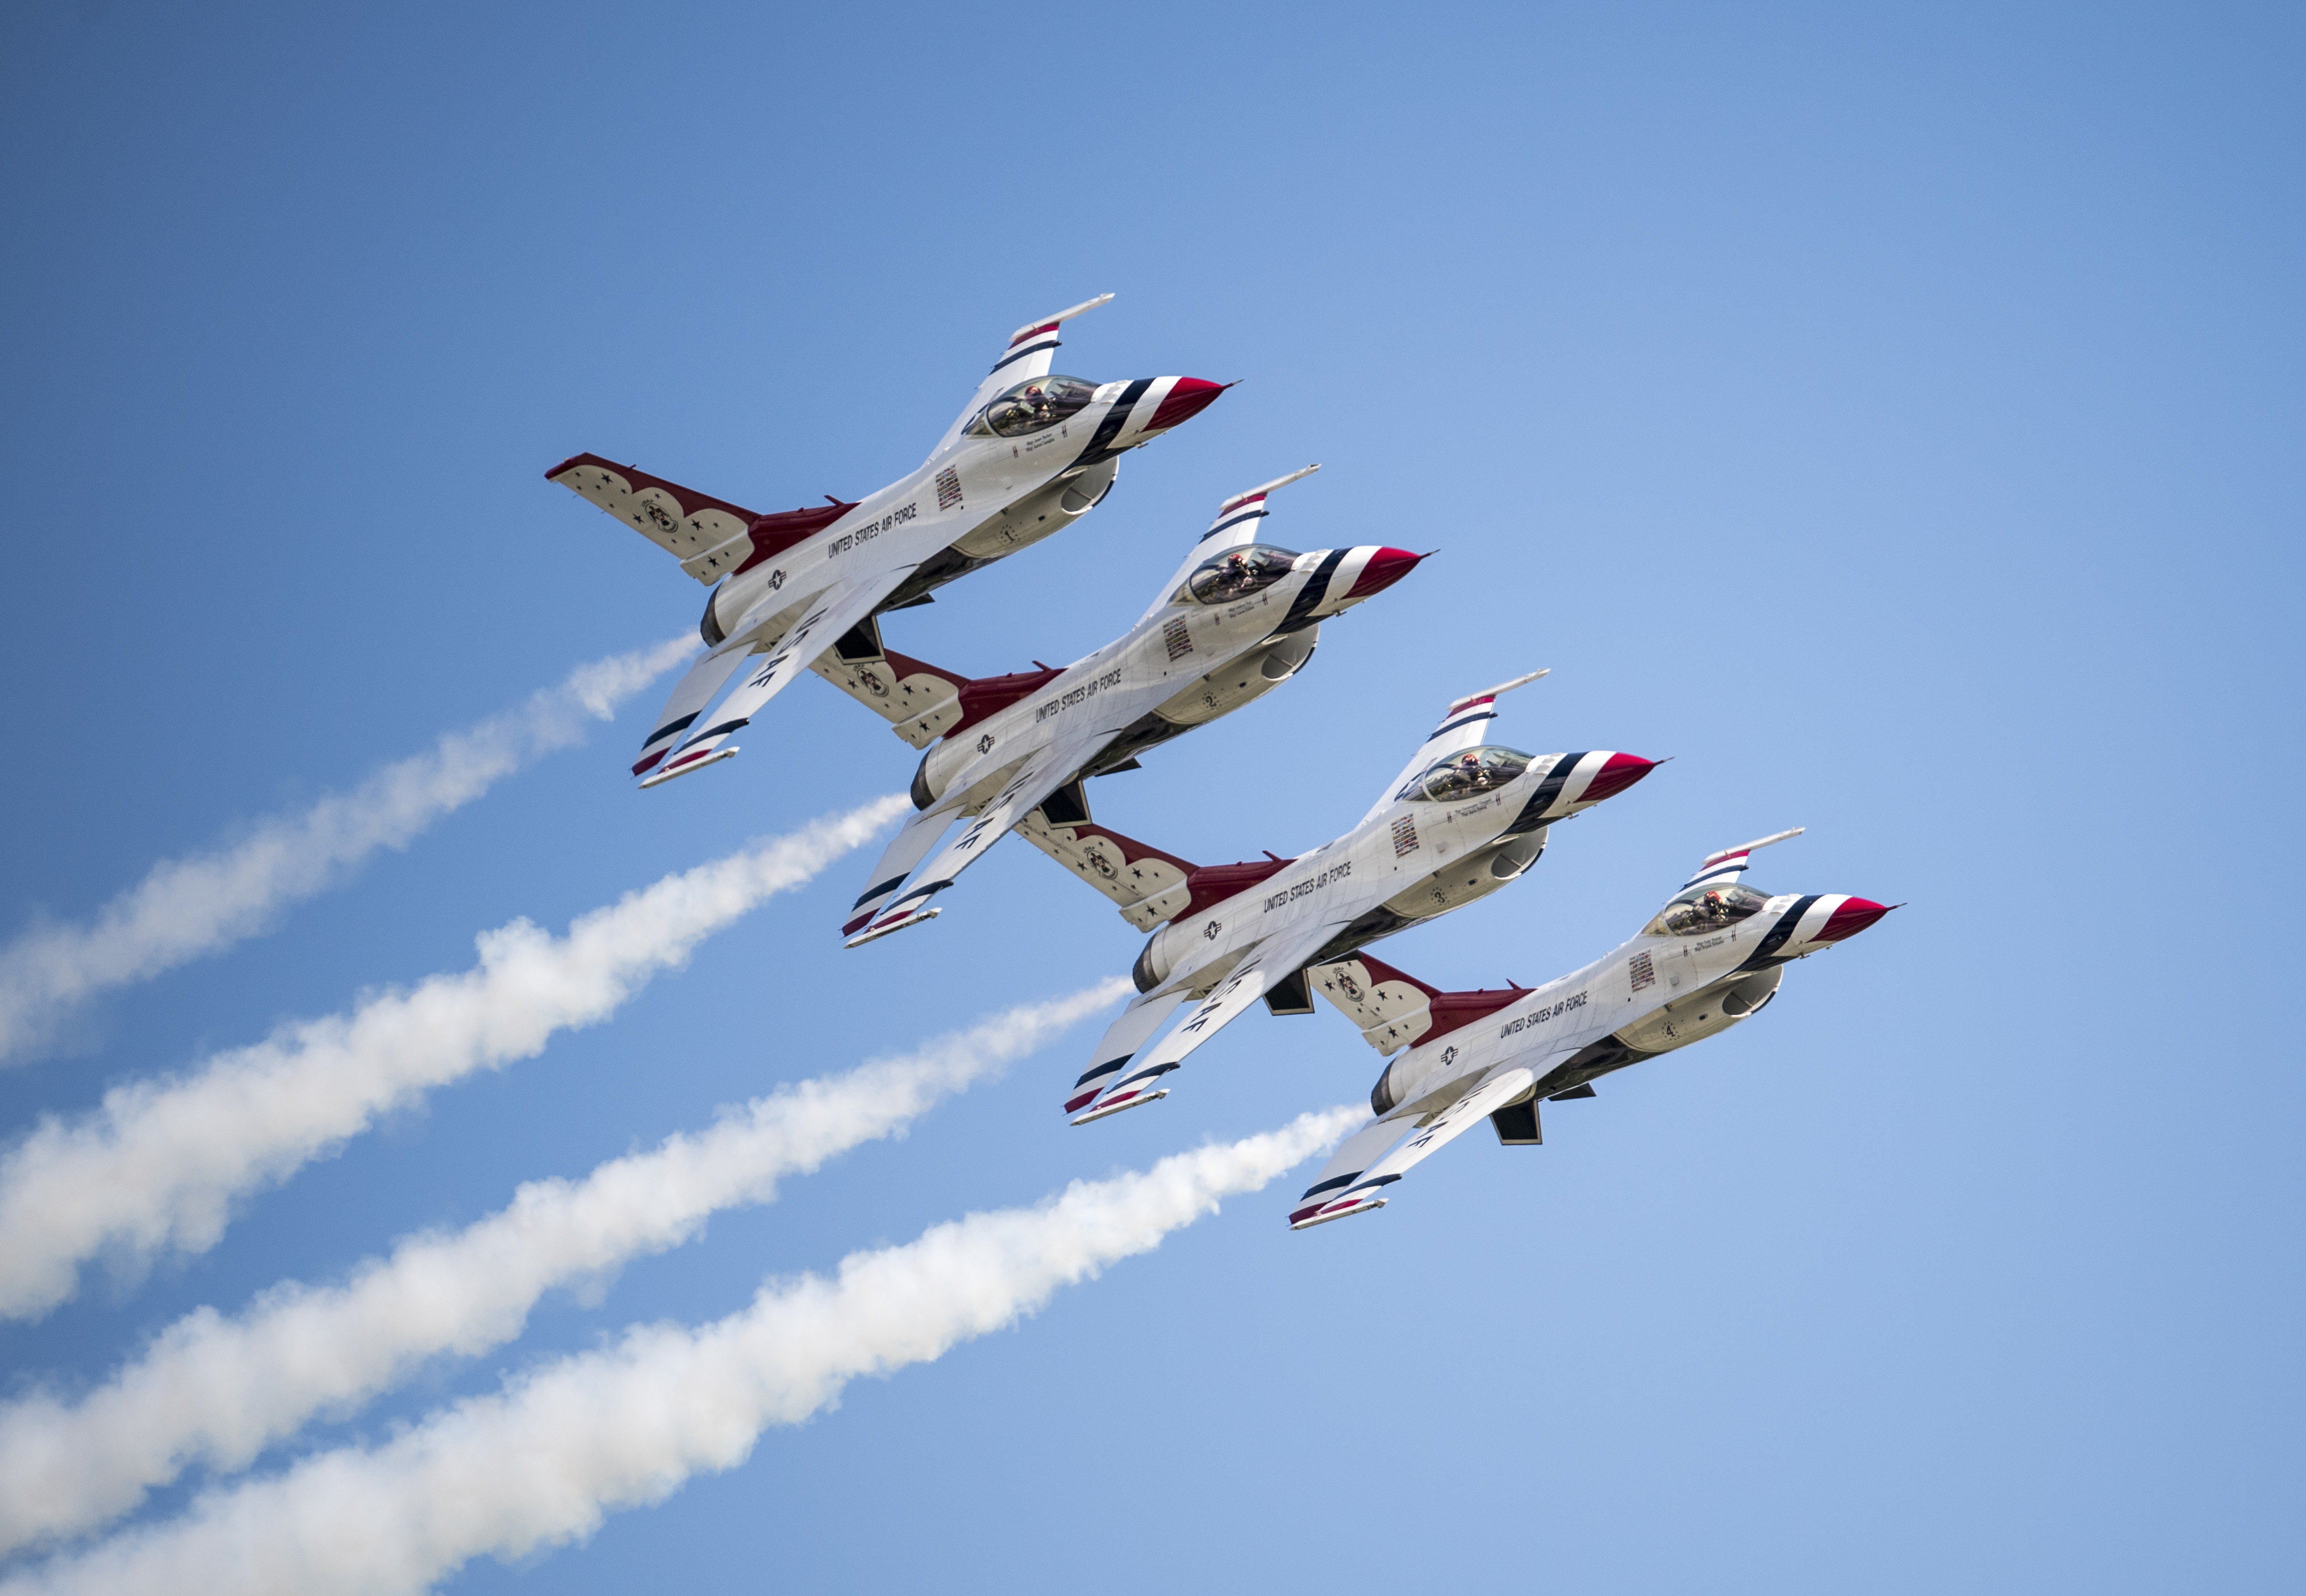 Thunderbird aircraft mishap at air show > U.S. Air Force > Article ...